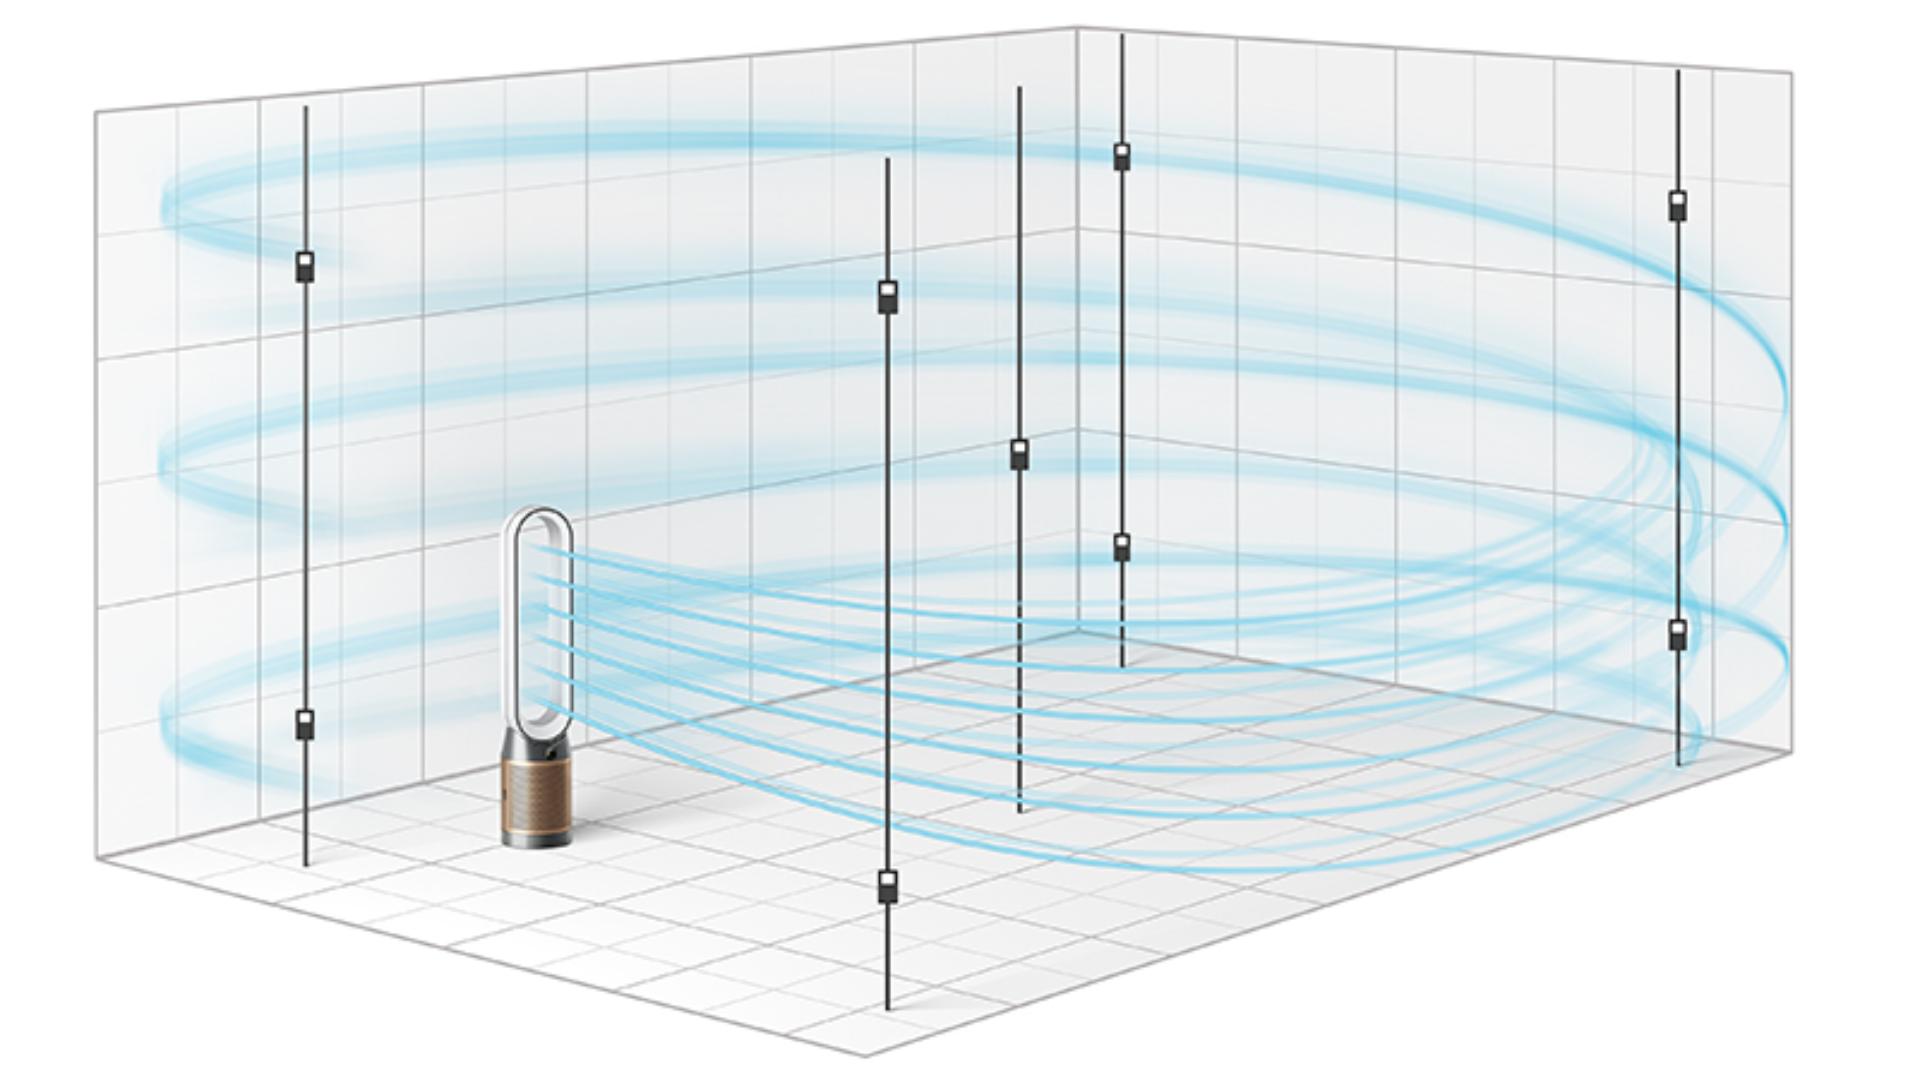 Testul POLAR realizazt de Dyson merge mai departe pentru a măsura purificarea într-o încăpere de dimensiuni reale 81m³